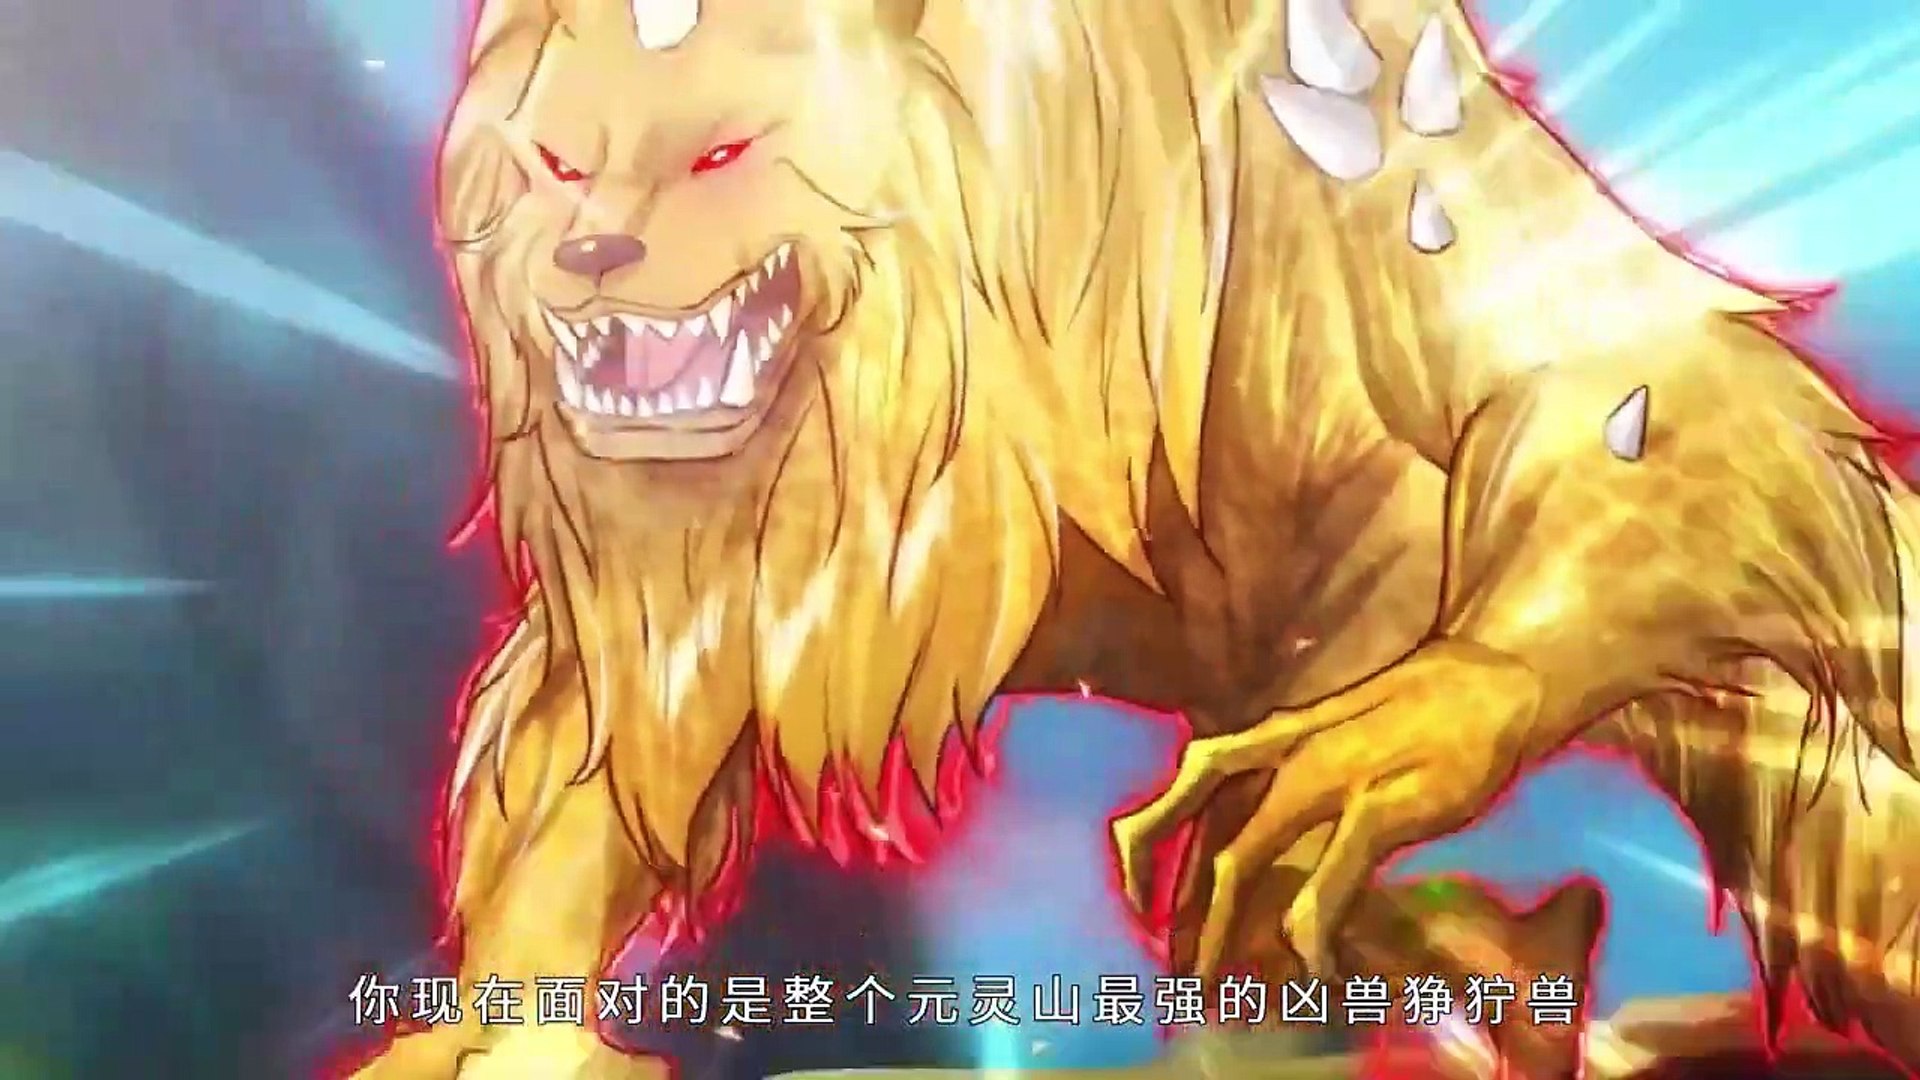 Mahoutsukai no Yome Season 2 Episode 1  RRJH ANIME #ANIME #ANIMATION -  video Dailymotion